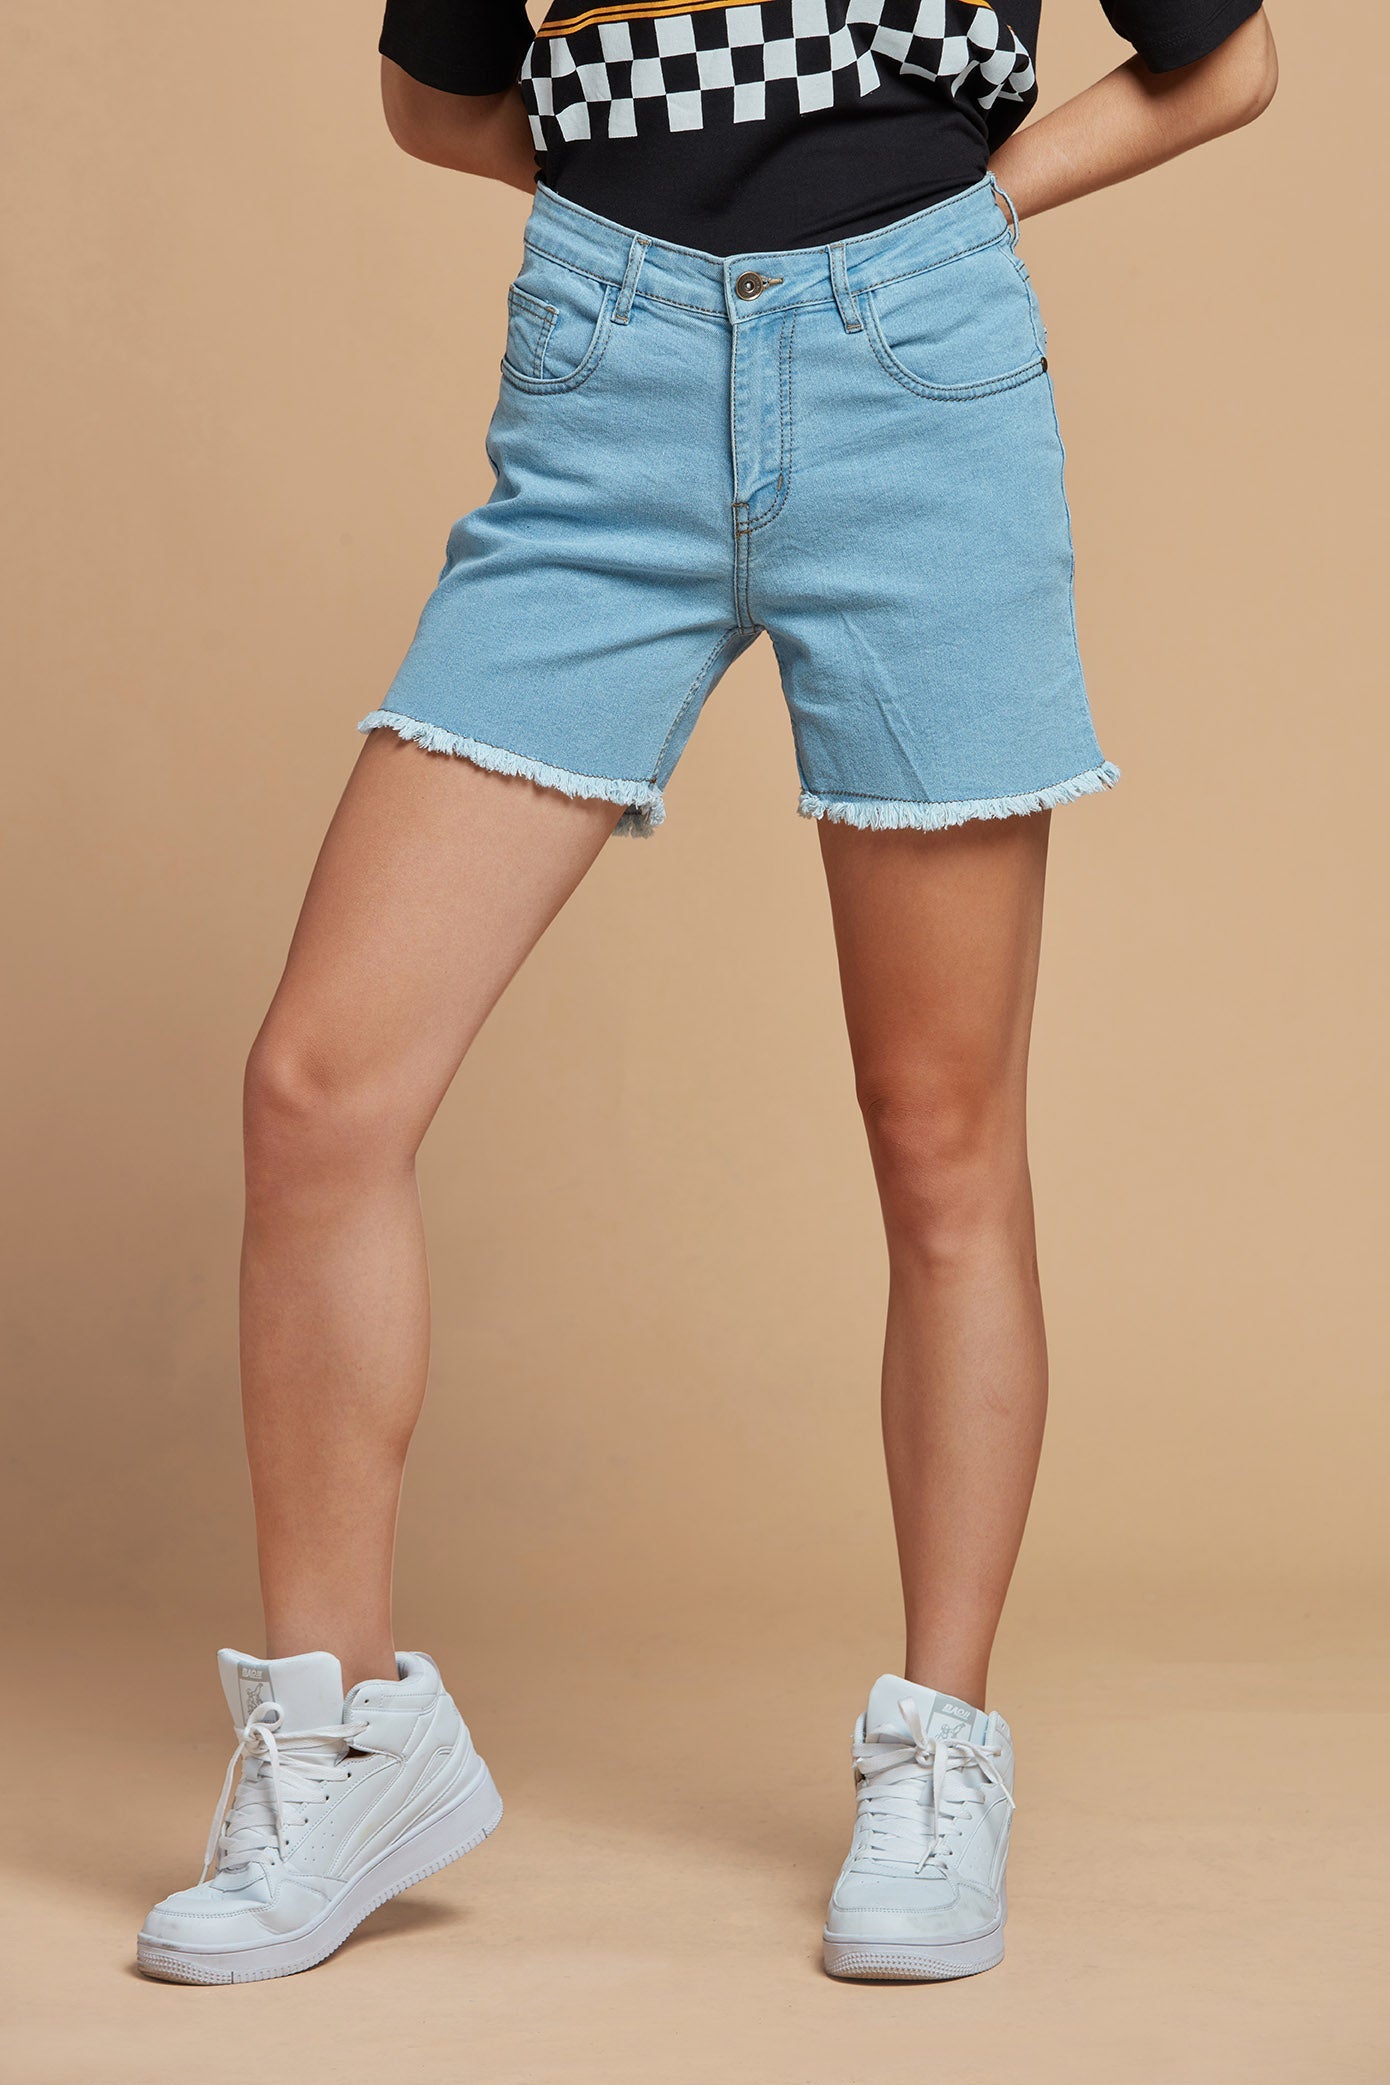 Buy TINY GIRL Regular Plain Denim Shorts Light Blue online